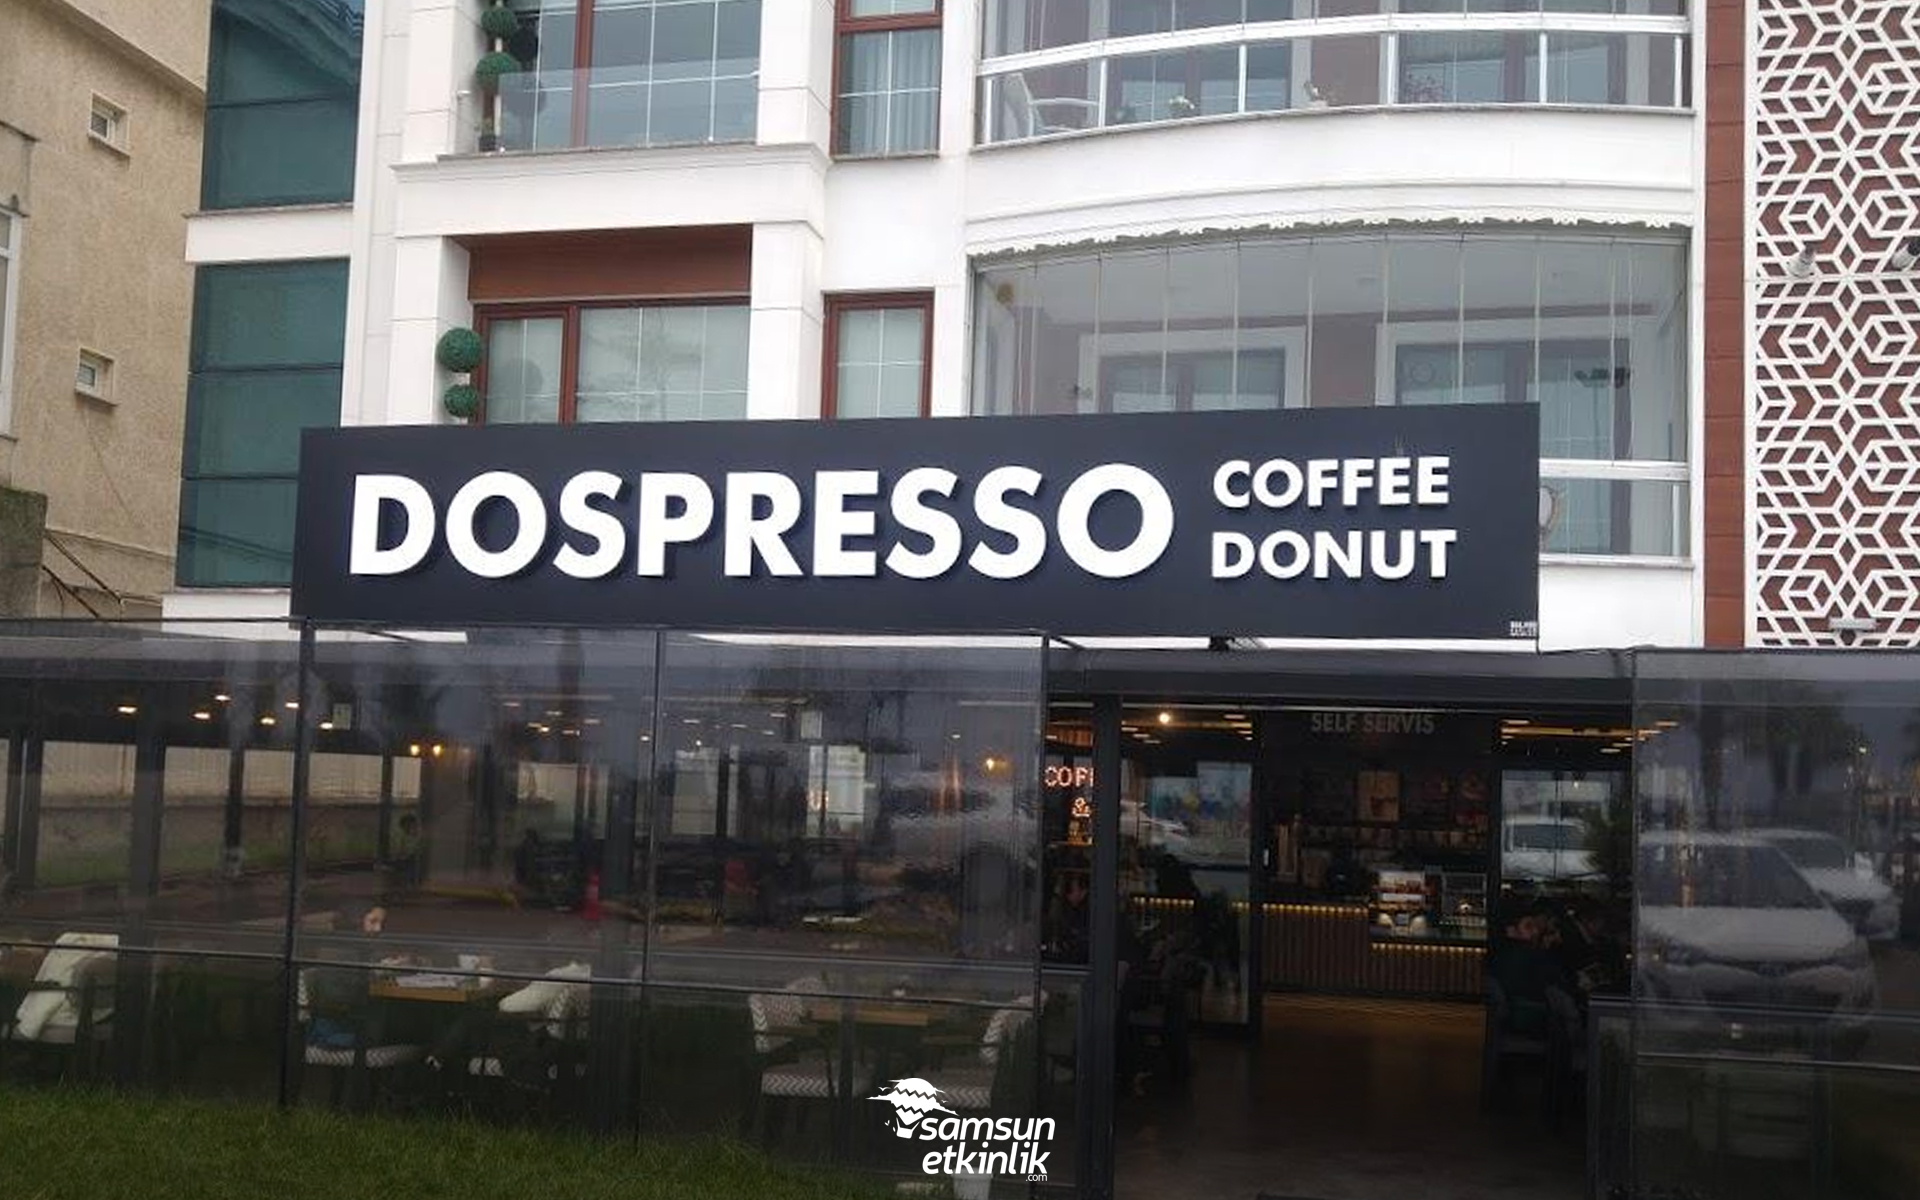 Dospresso Coffee & Donut